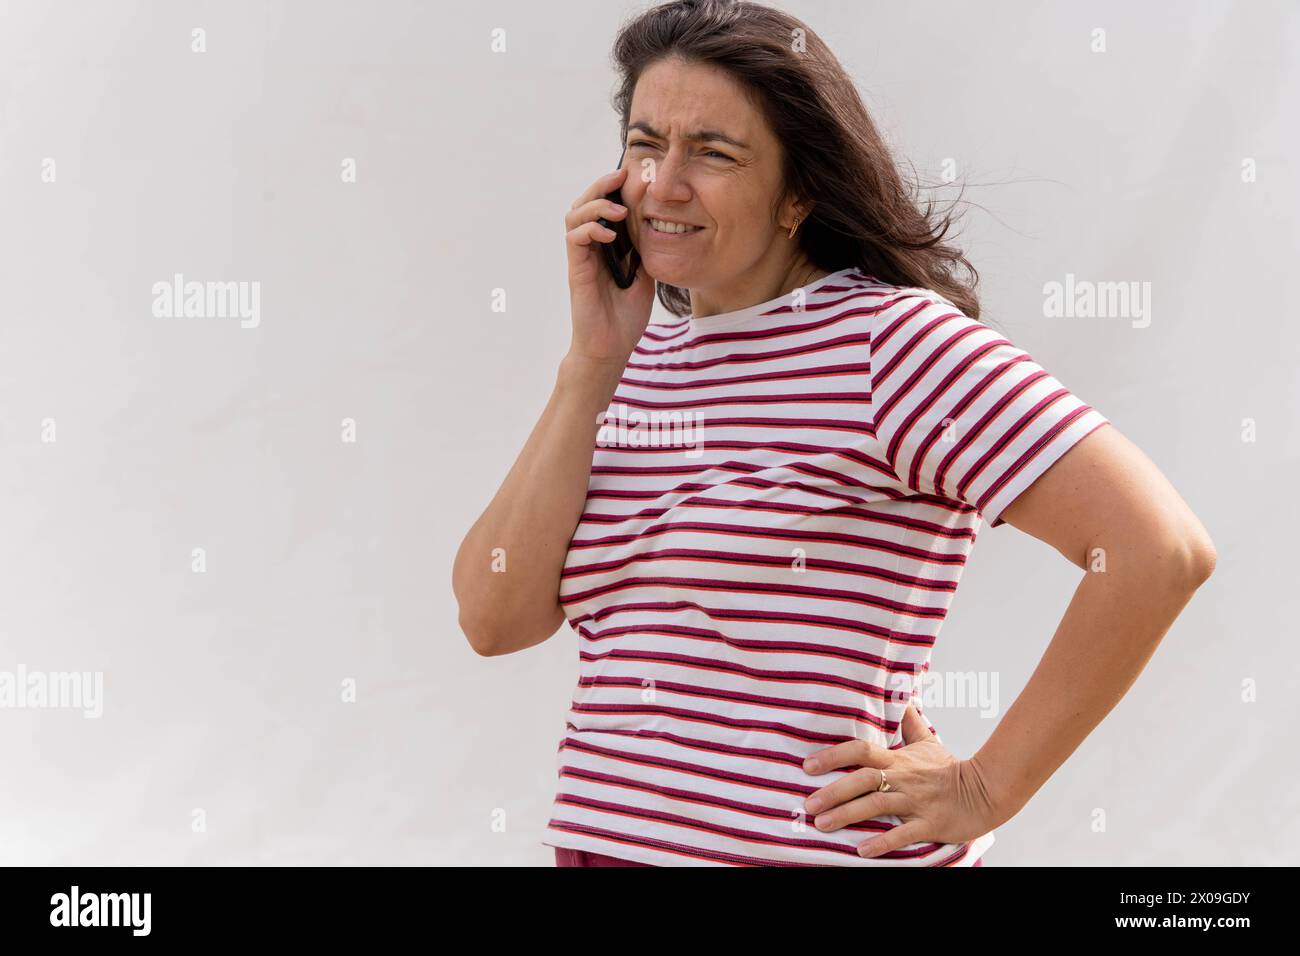 Weiße Frau mittleren Alters mit langen Haaren, die sich auf einem Handy unterhalten. Sie ist stilvoll in einem gestreiften Oberteil vor einem hellen Hintergrund gekleidet. Stockfoto